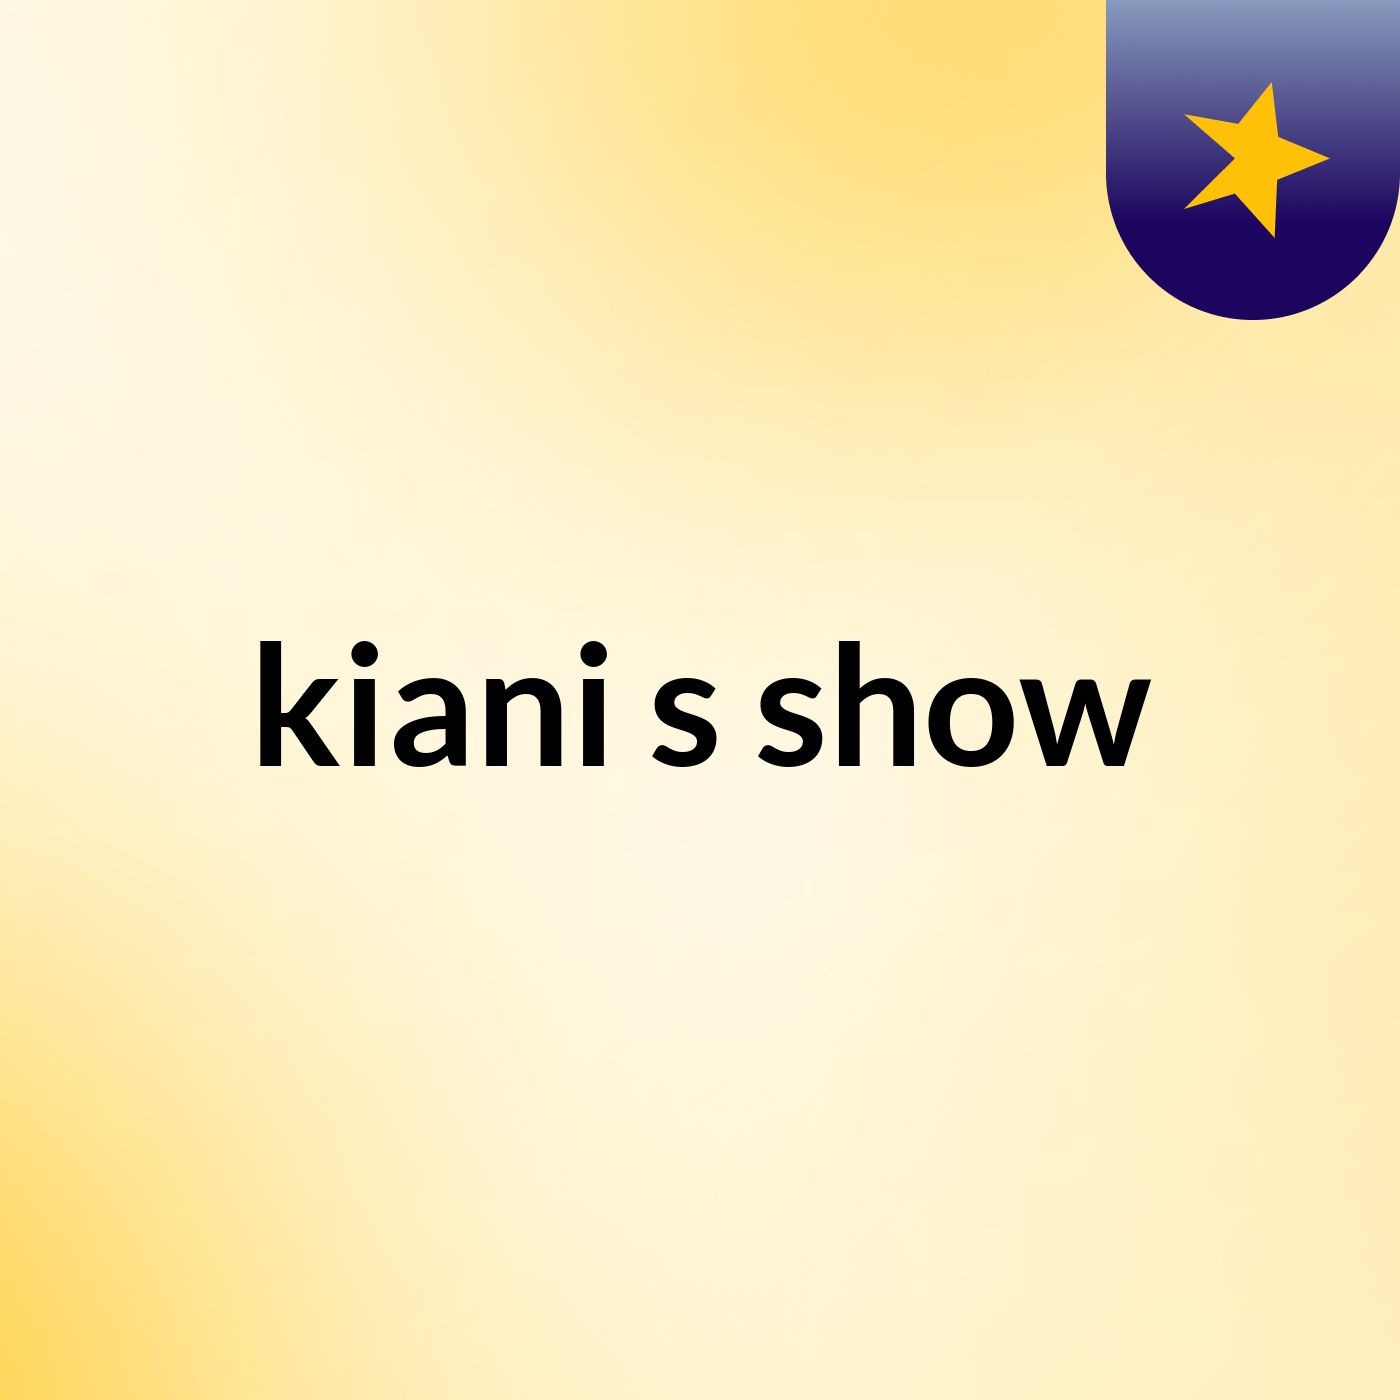 kiani's show